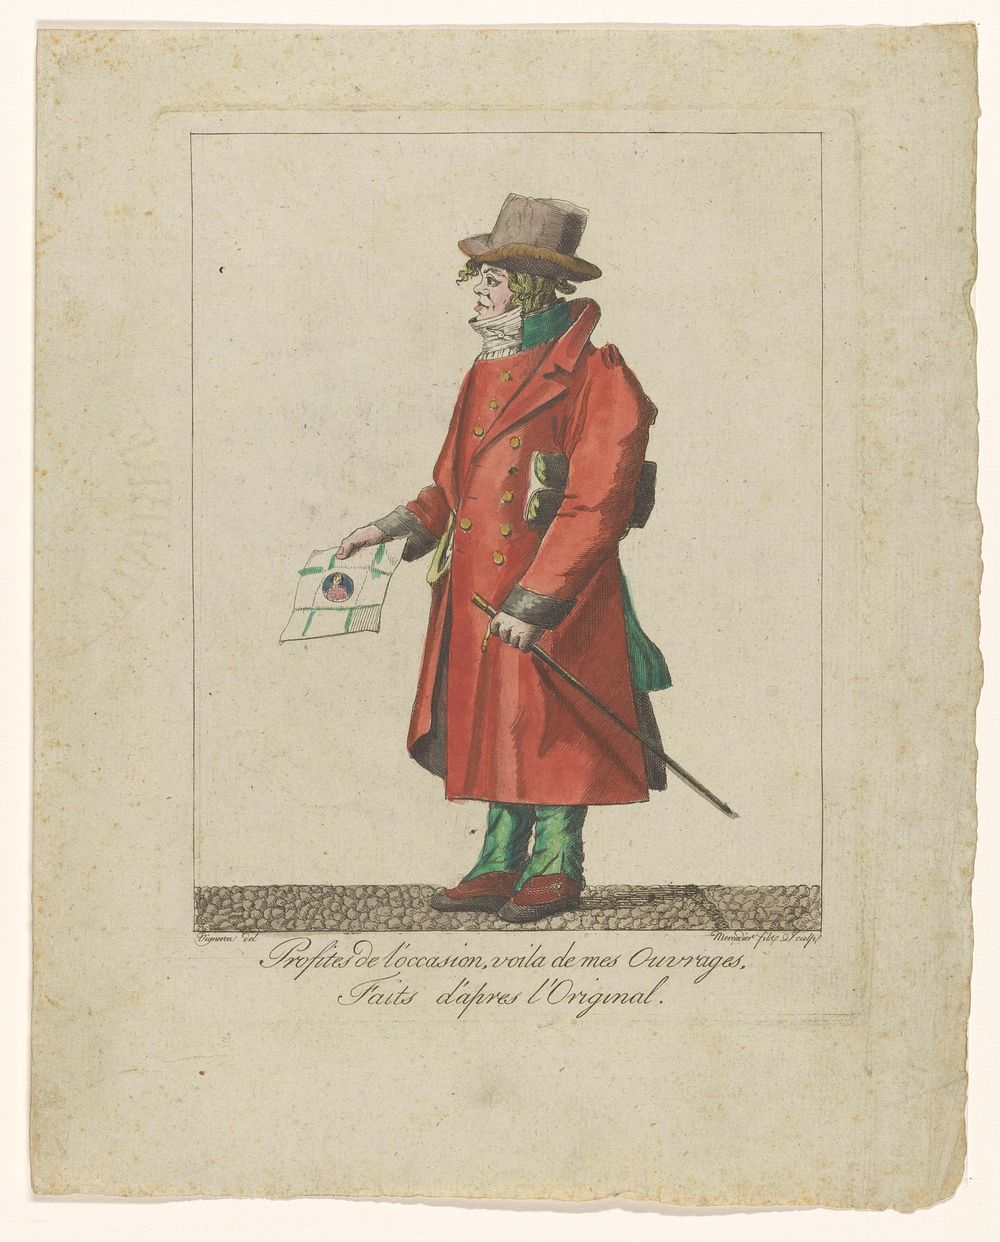 Man met een portret in zijn hand (c. 1700 - c. 1800) by le Jeune Mercadier and Vigneron